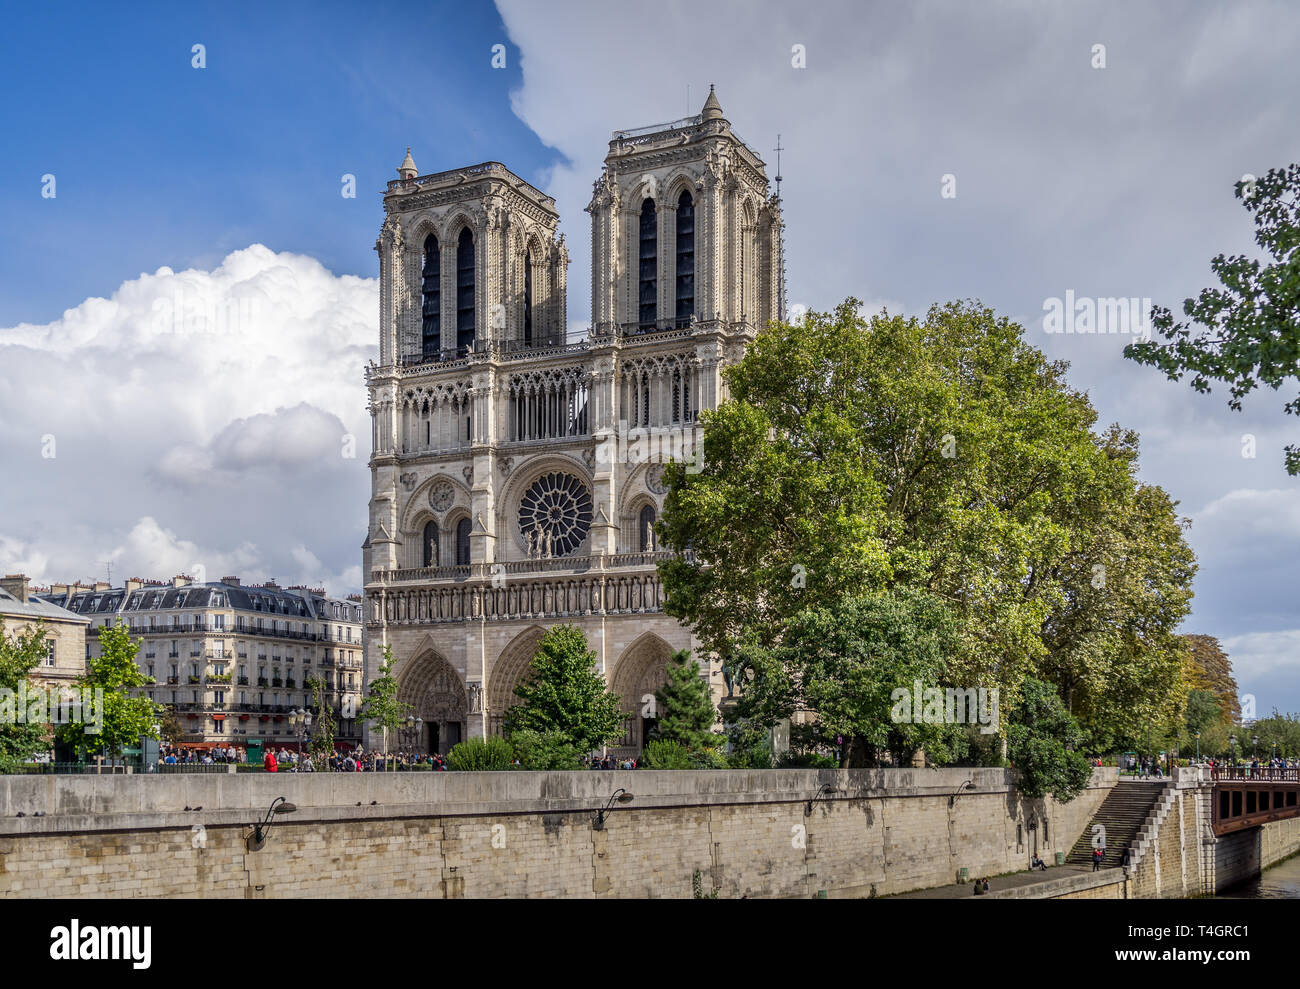 Parigi, Francia - 14 settembre, 2017 Notre Dame de Paris, medievale cattedrale cattolica di Parigi, Francia. Uno dei più famosi edificio della chiesa nel mondo. Foto Stock